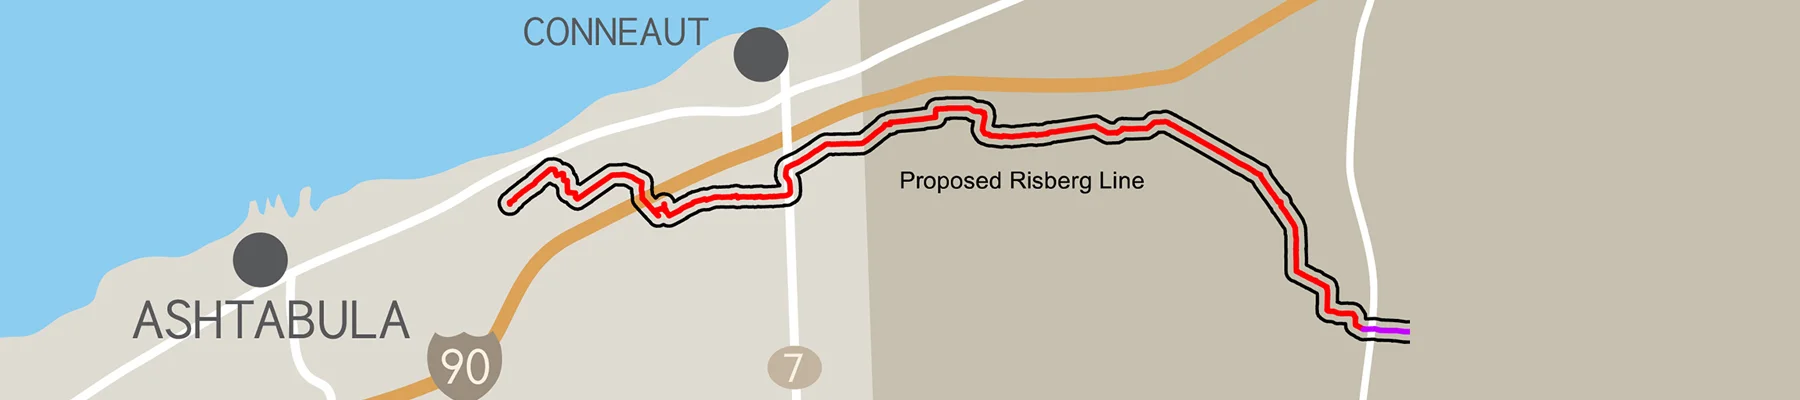 Risberg pipeline